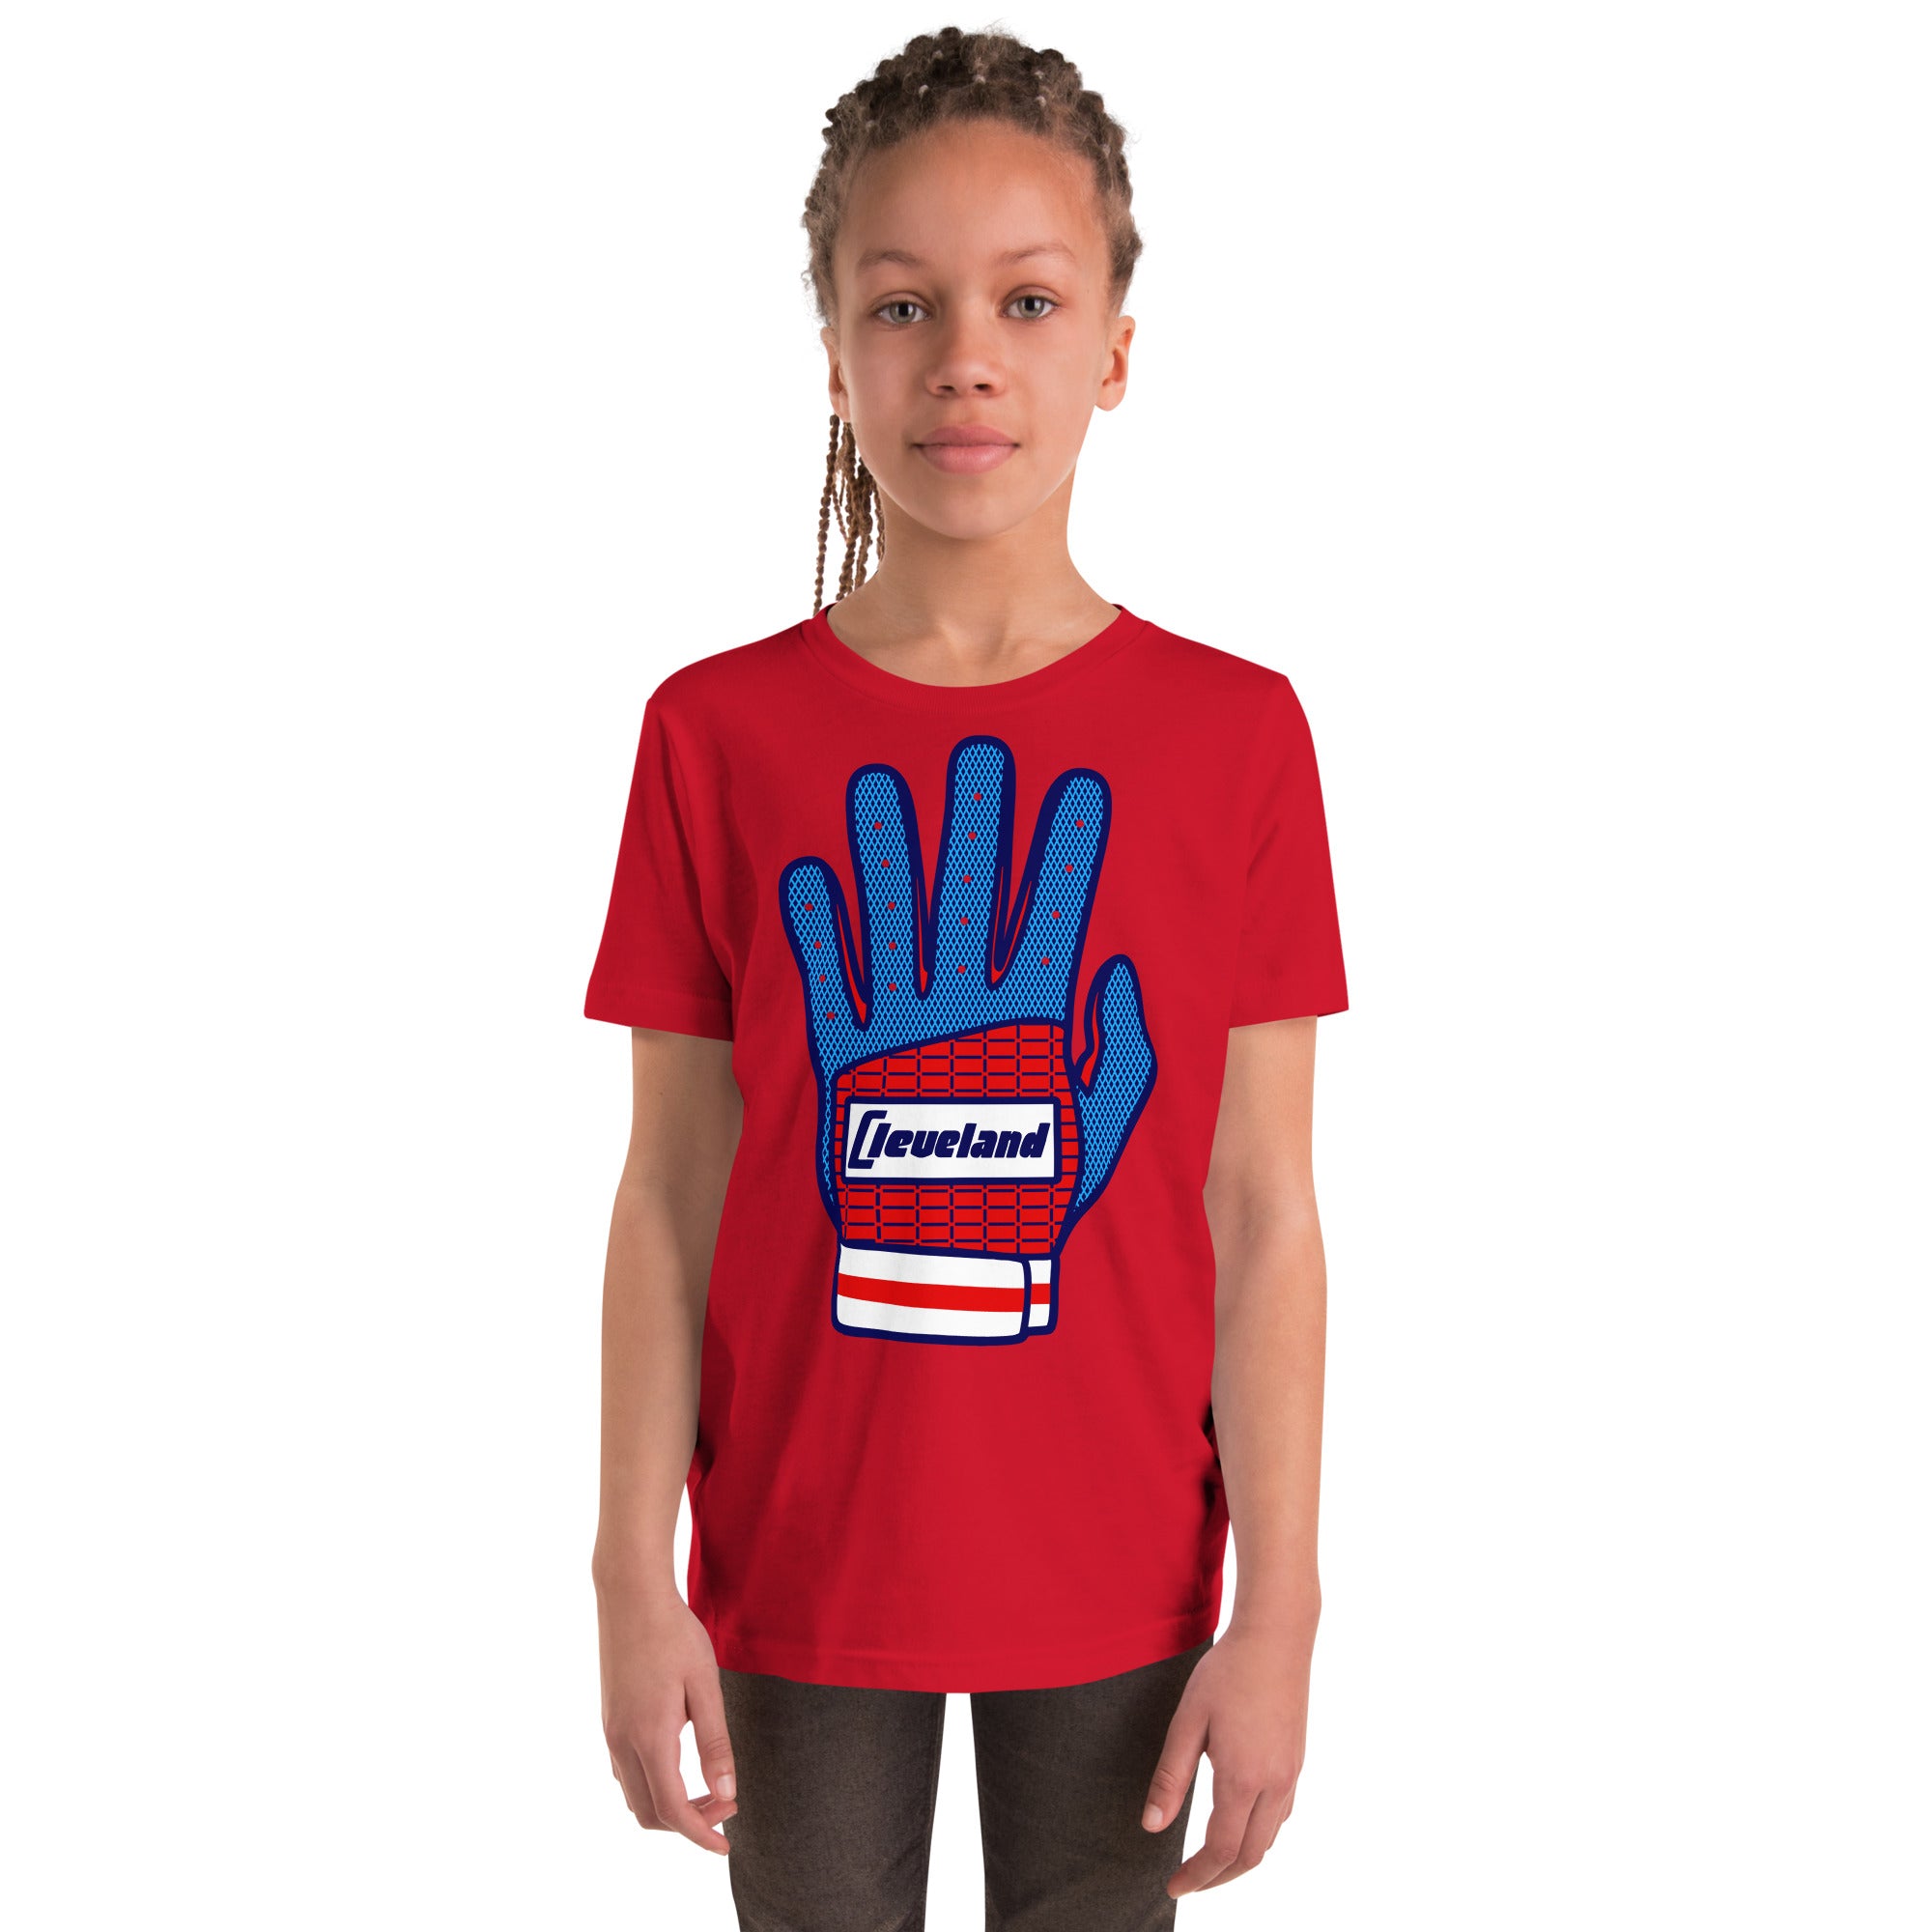 Batting Glove - Youth T-Shirt, T-shirts, WeBleedOhio, WeBleedOhio